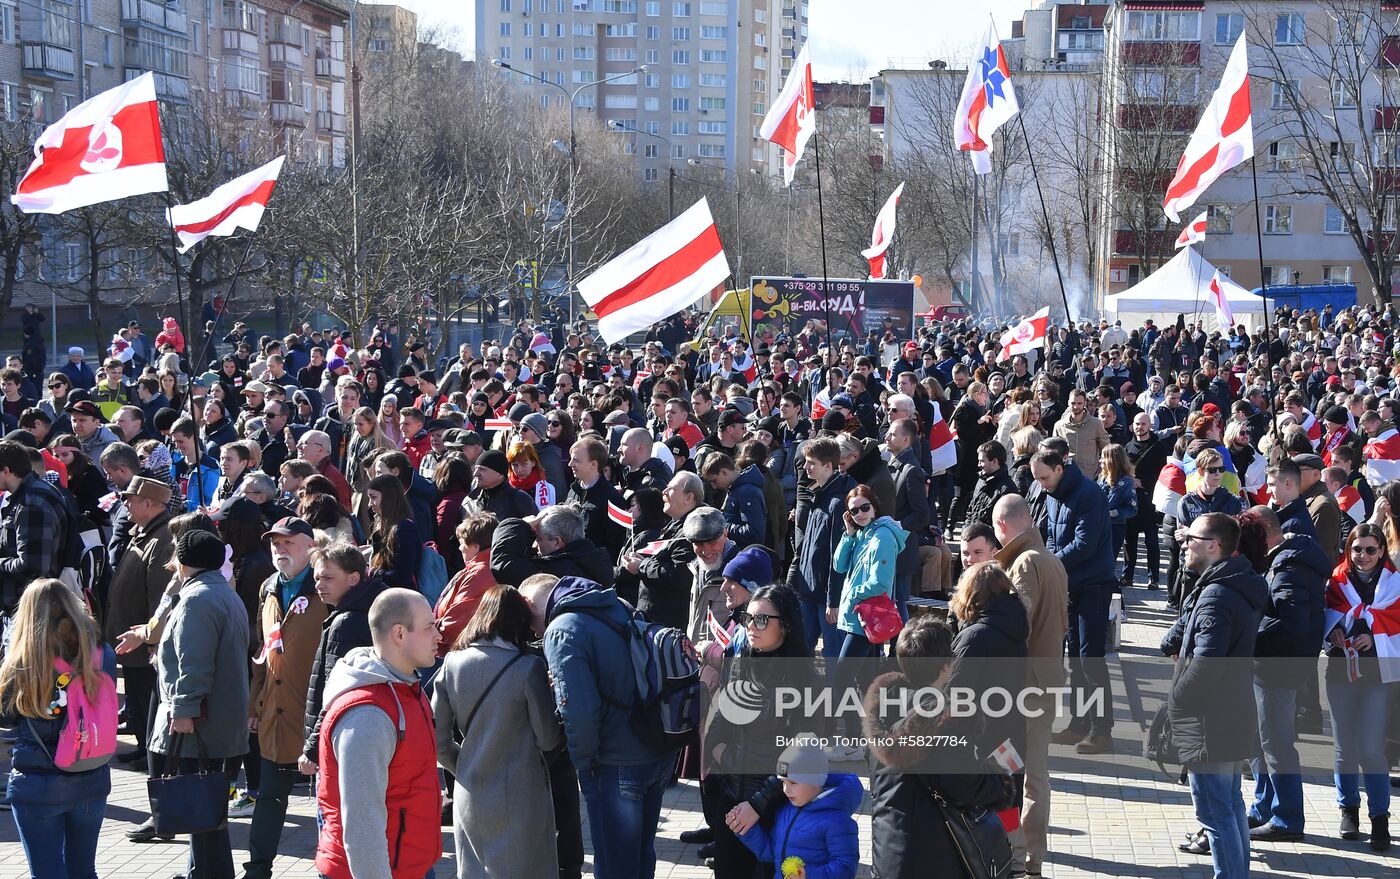 Акция "День воли" приурочена к годовщине создания Белорусской народной республики